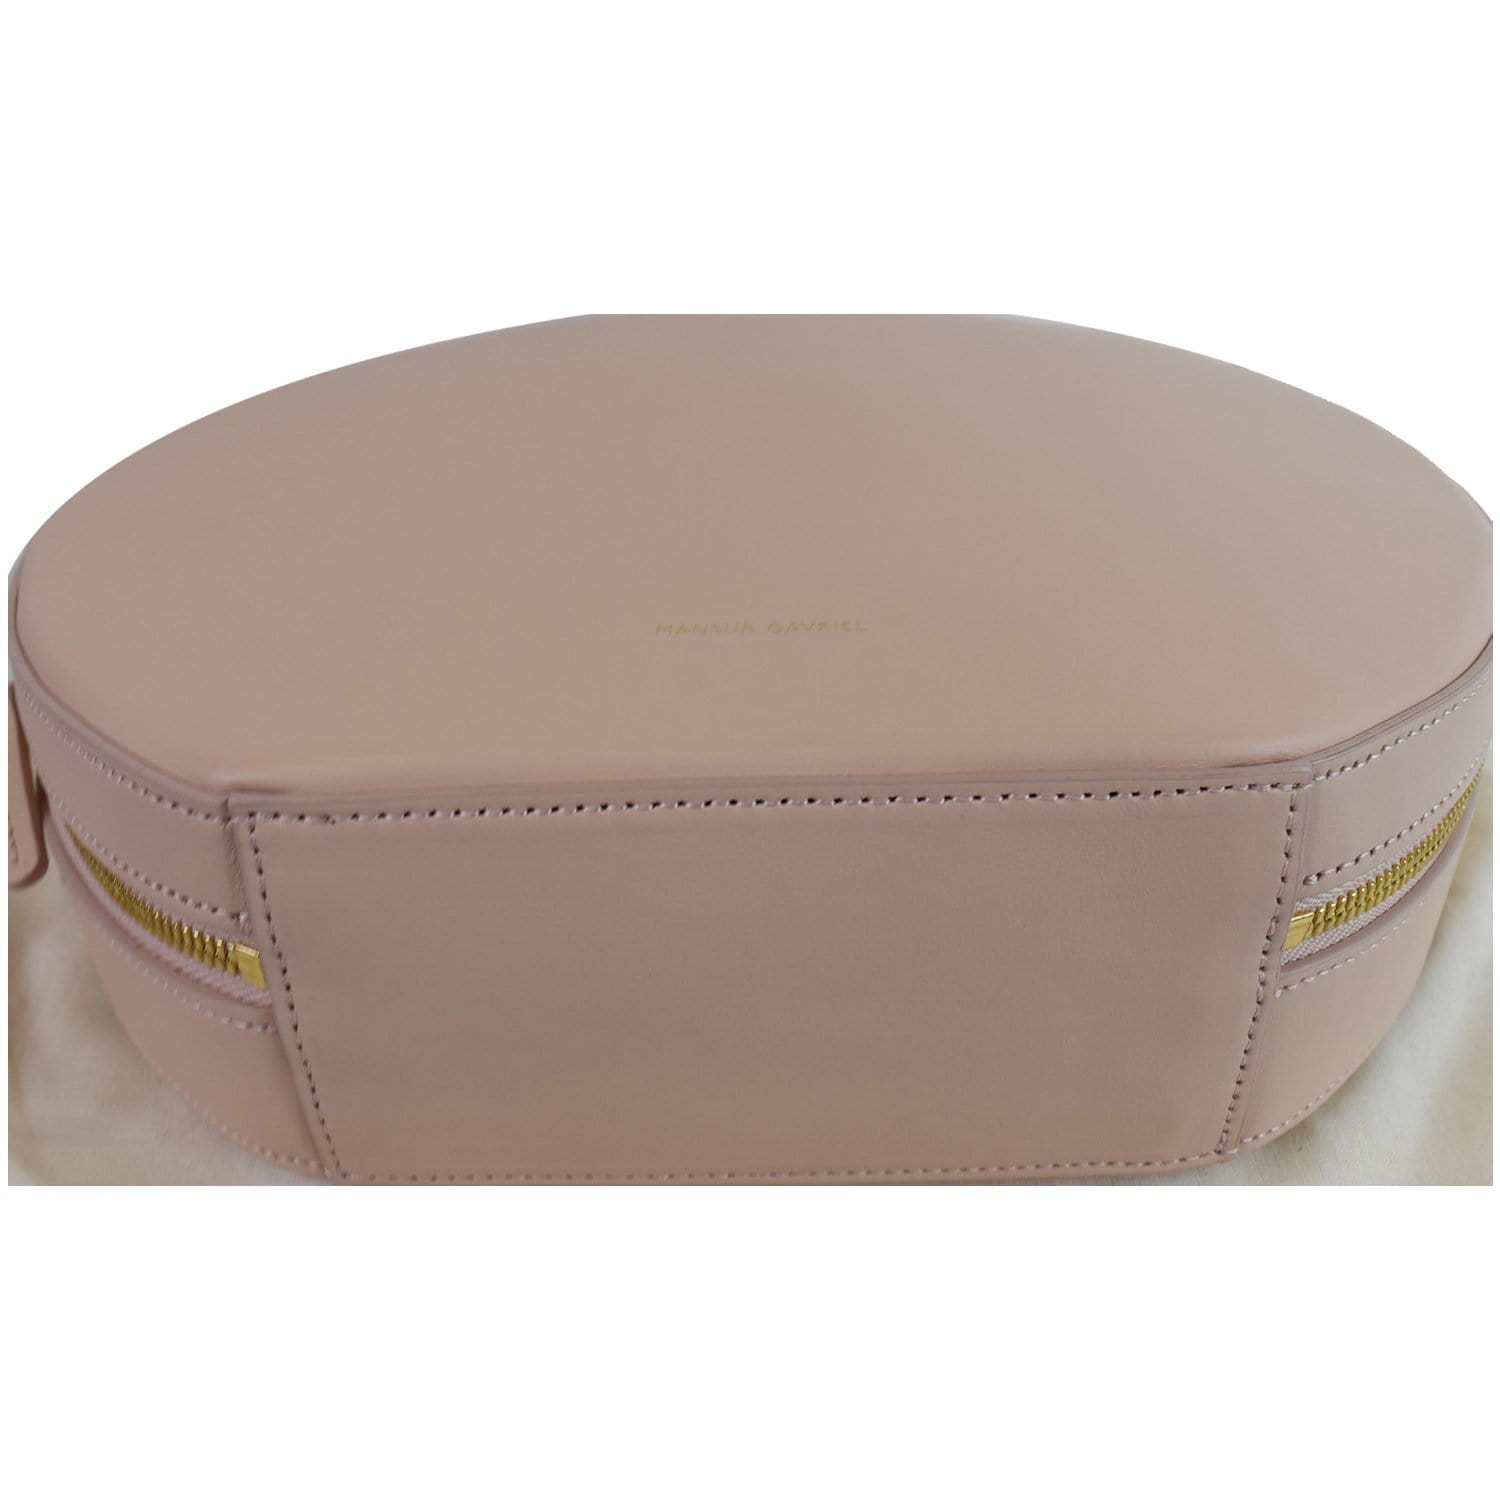 MANSUR GAVRIEL Large Circle Leather Tote Bag Pink - 25% OFF